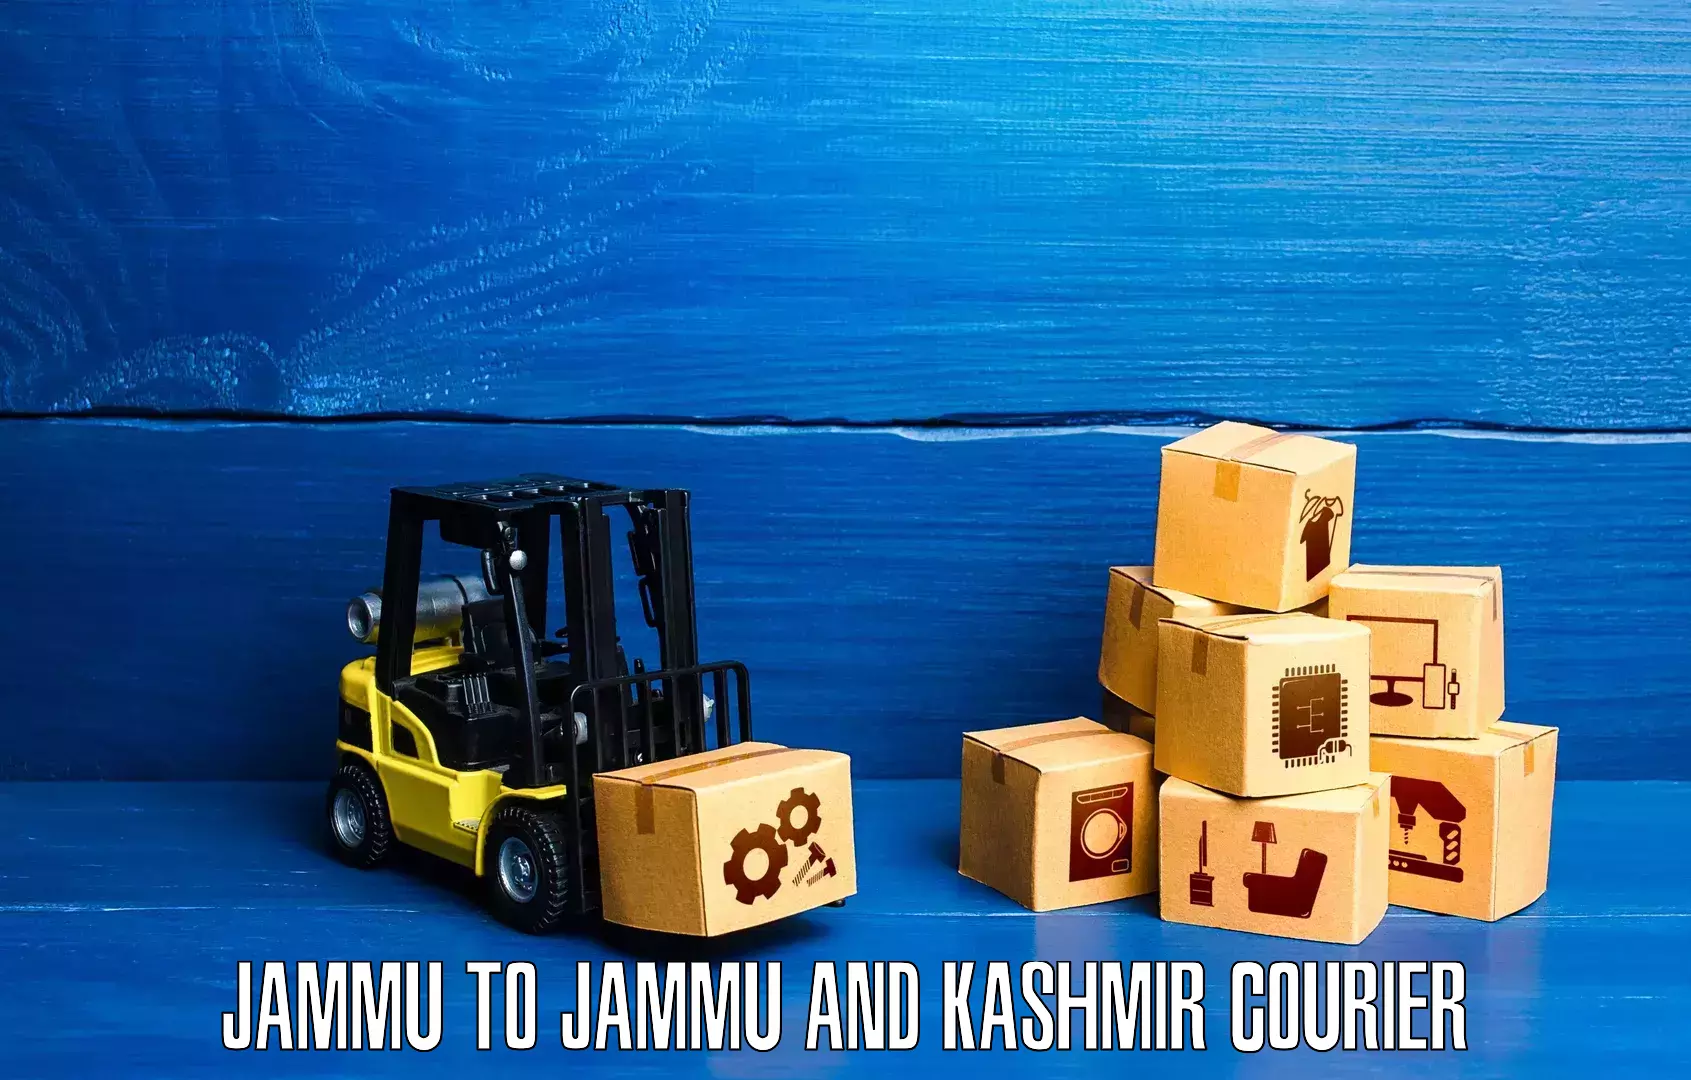 Logistics service provider Jammu to Kishtwar